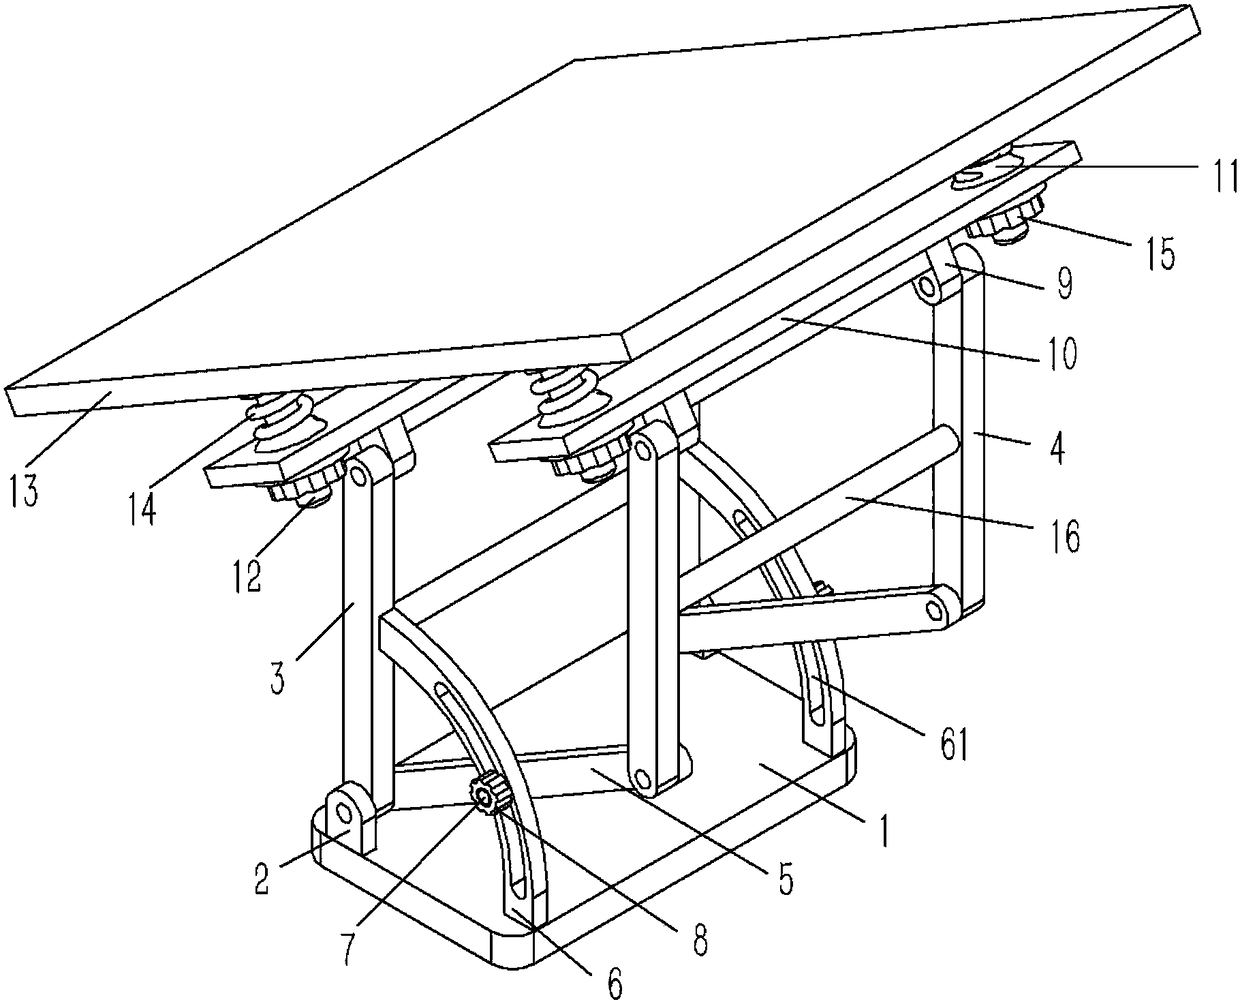 An angle-adjustable solar panel mounting bracket